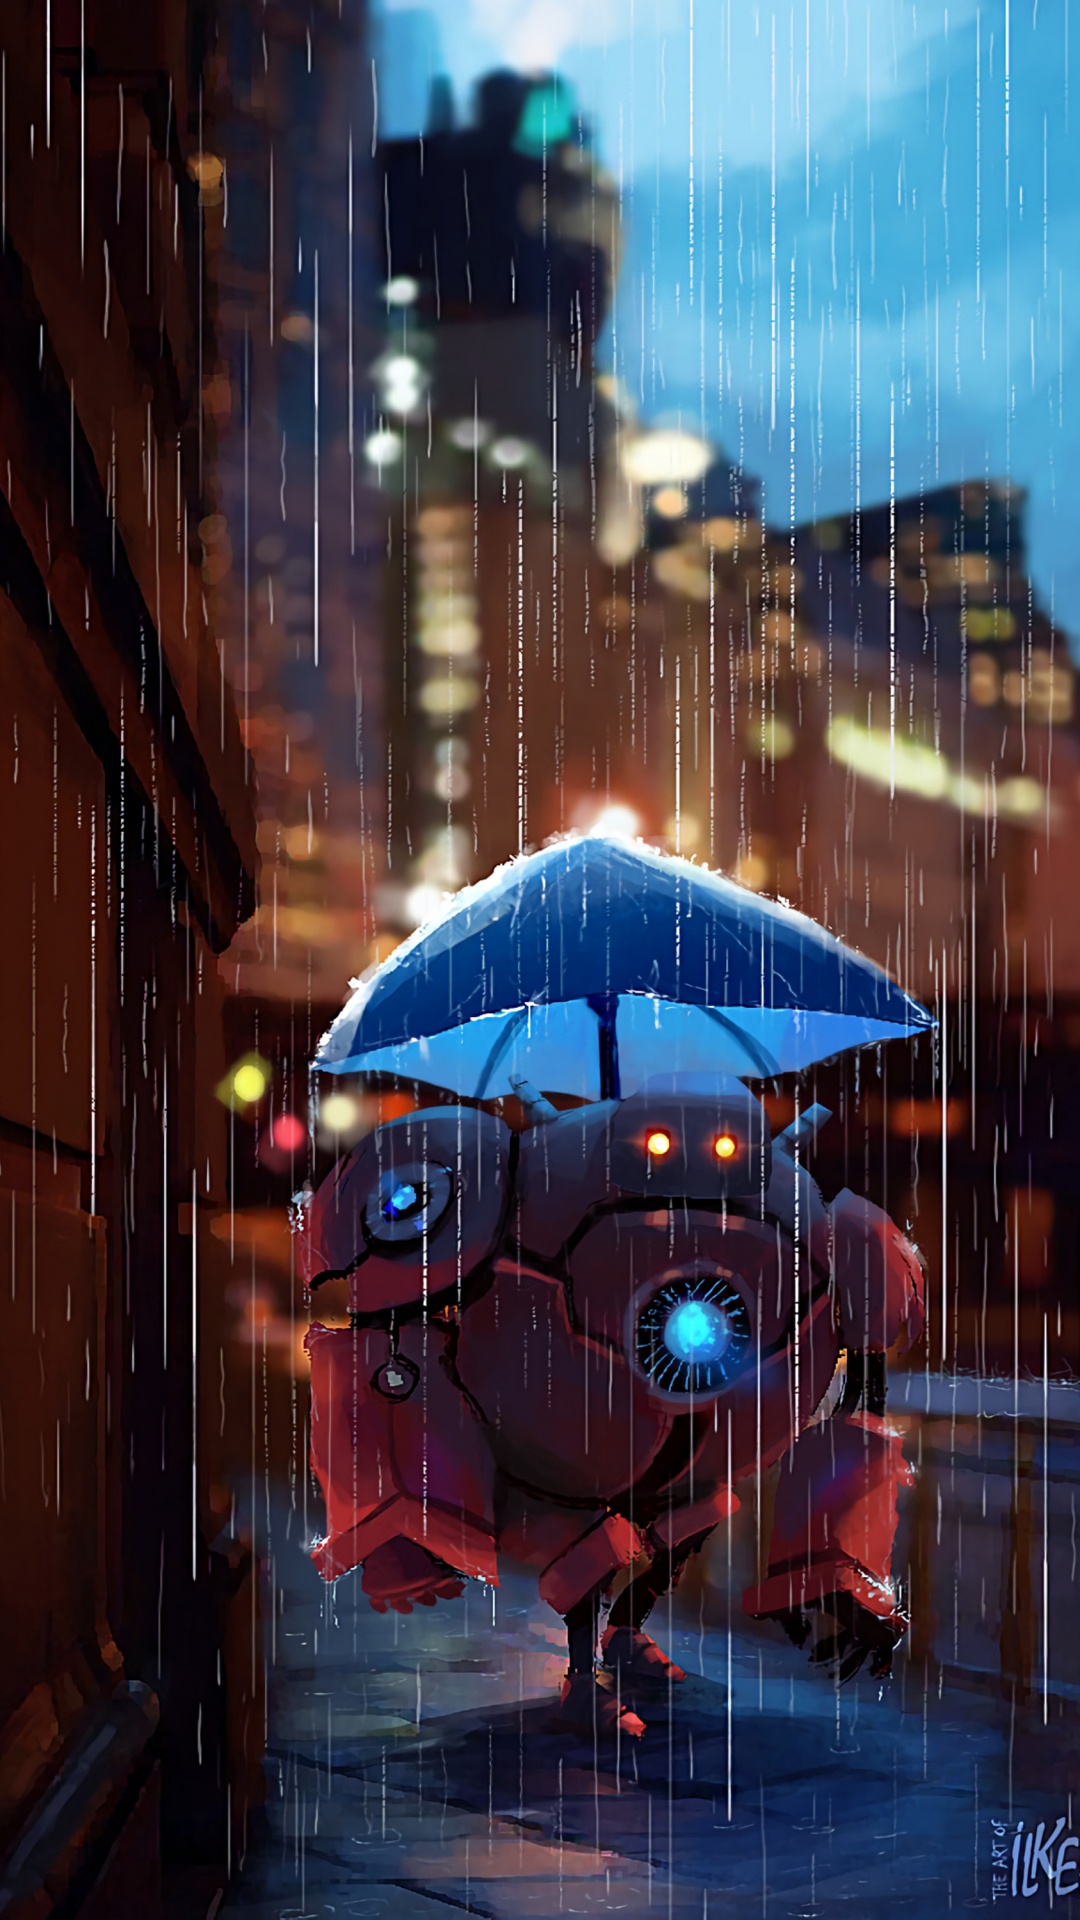 Parapluie Bleu Dans la Ville Pendant la Nuit. Wallpaper in 1080x1920 Resolution